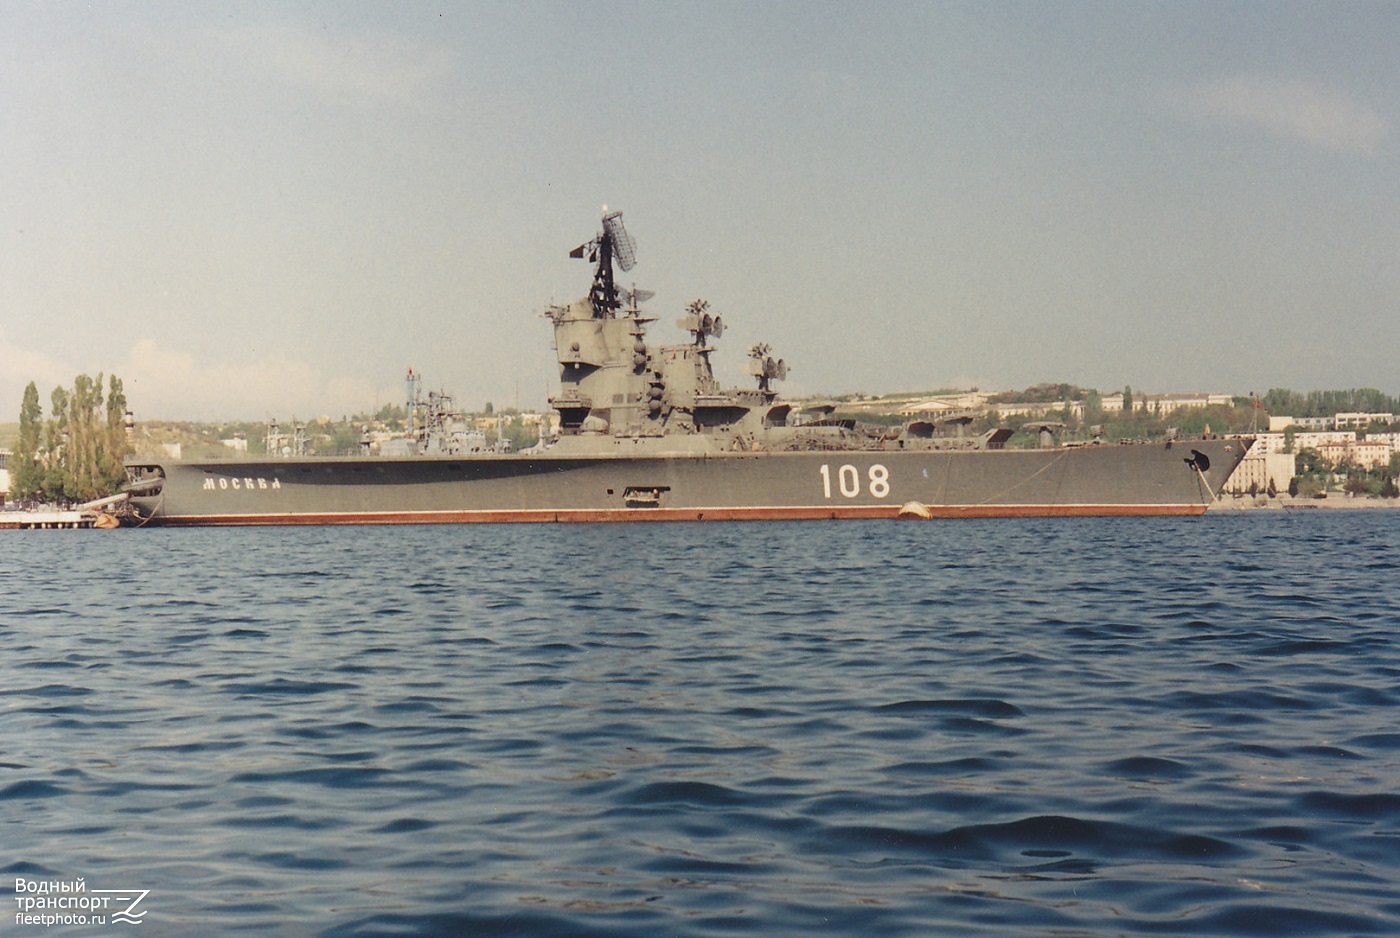 ПКР-108